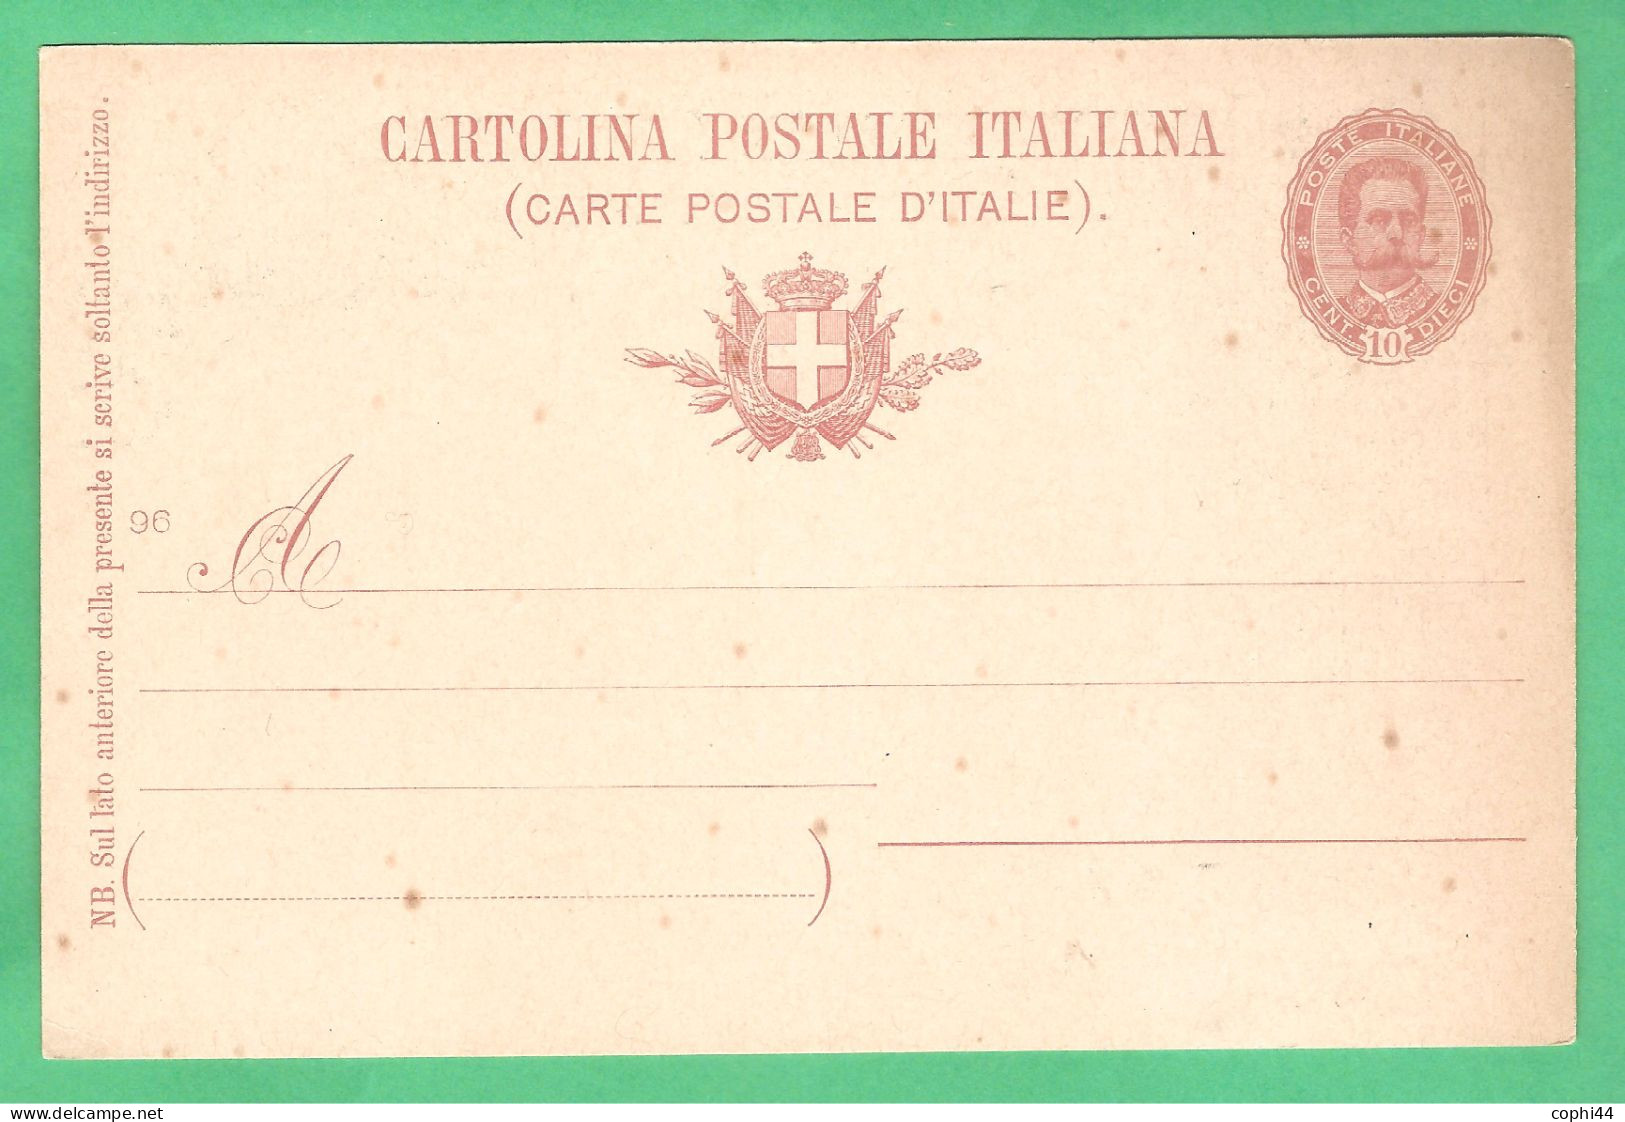 REGNO D'ITALIA 1896 CARTOLINA POSTALE NOZZE REALI MIL. 96 10 C Verde Scuro (FILAGRANO C29-5) NUOVA - Entiers Postaux